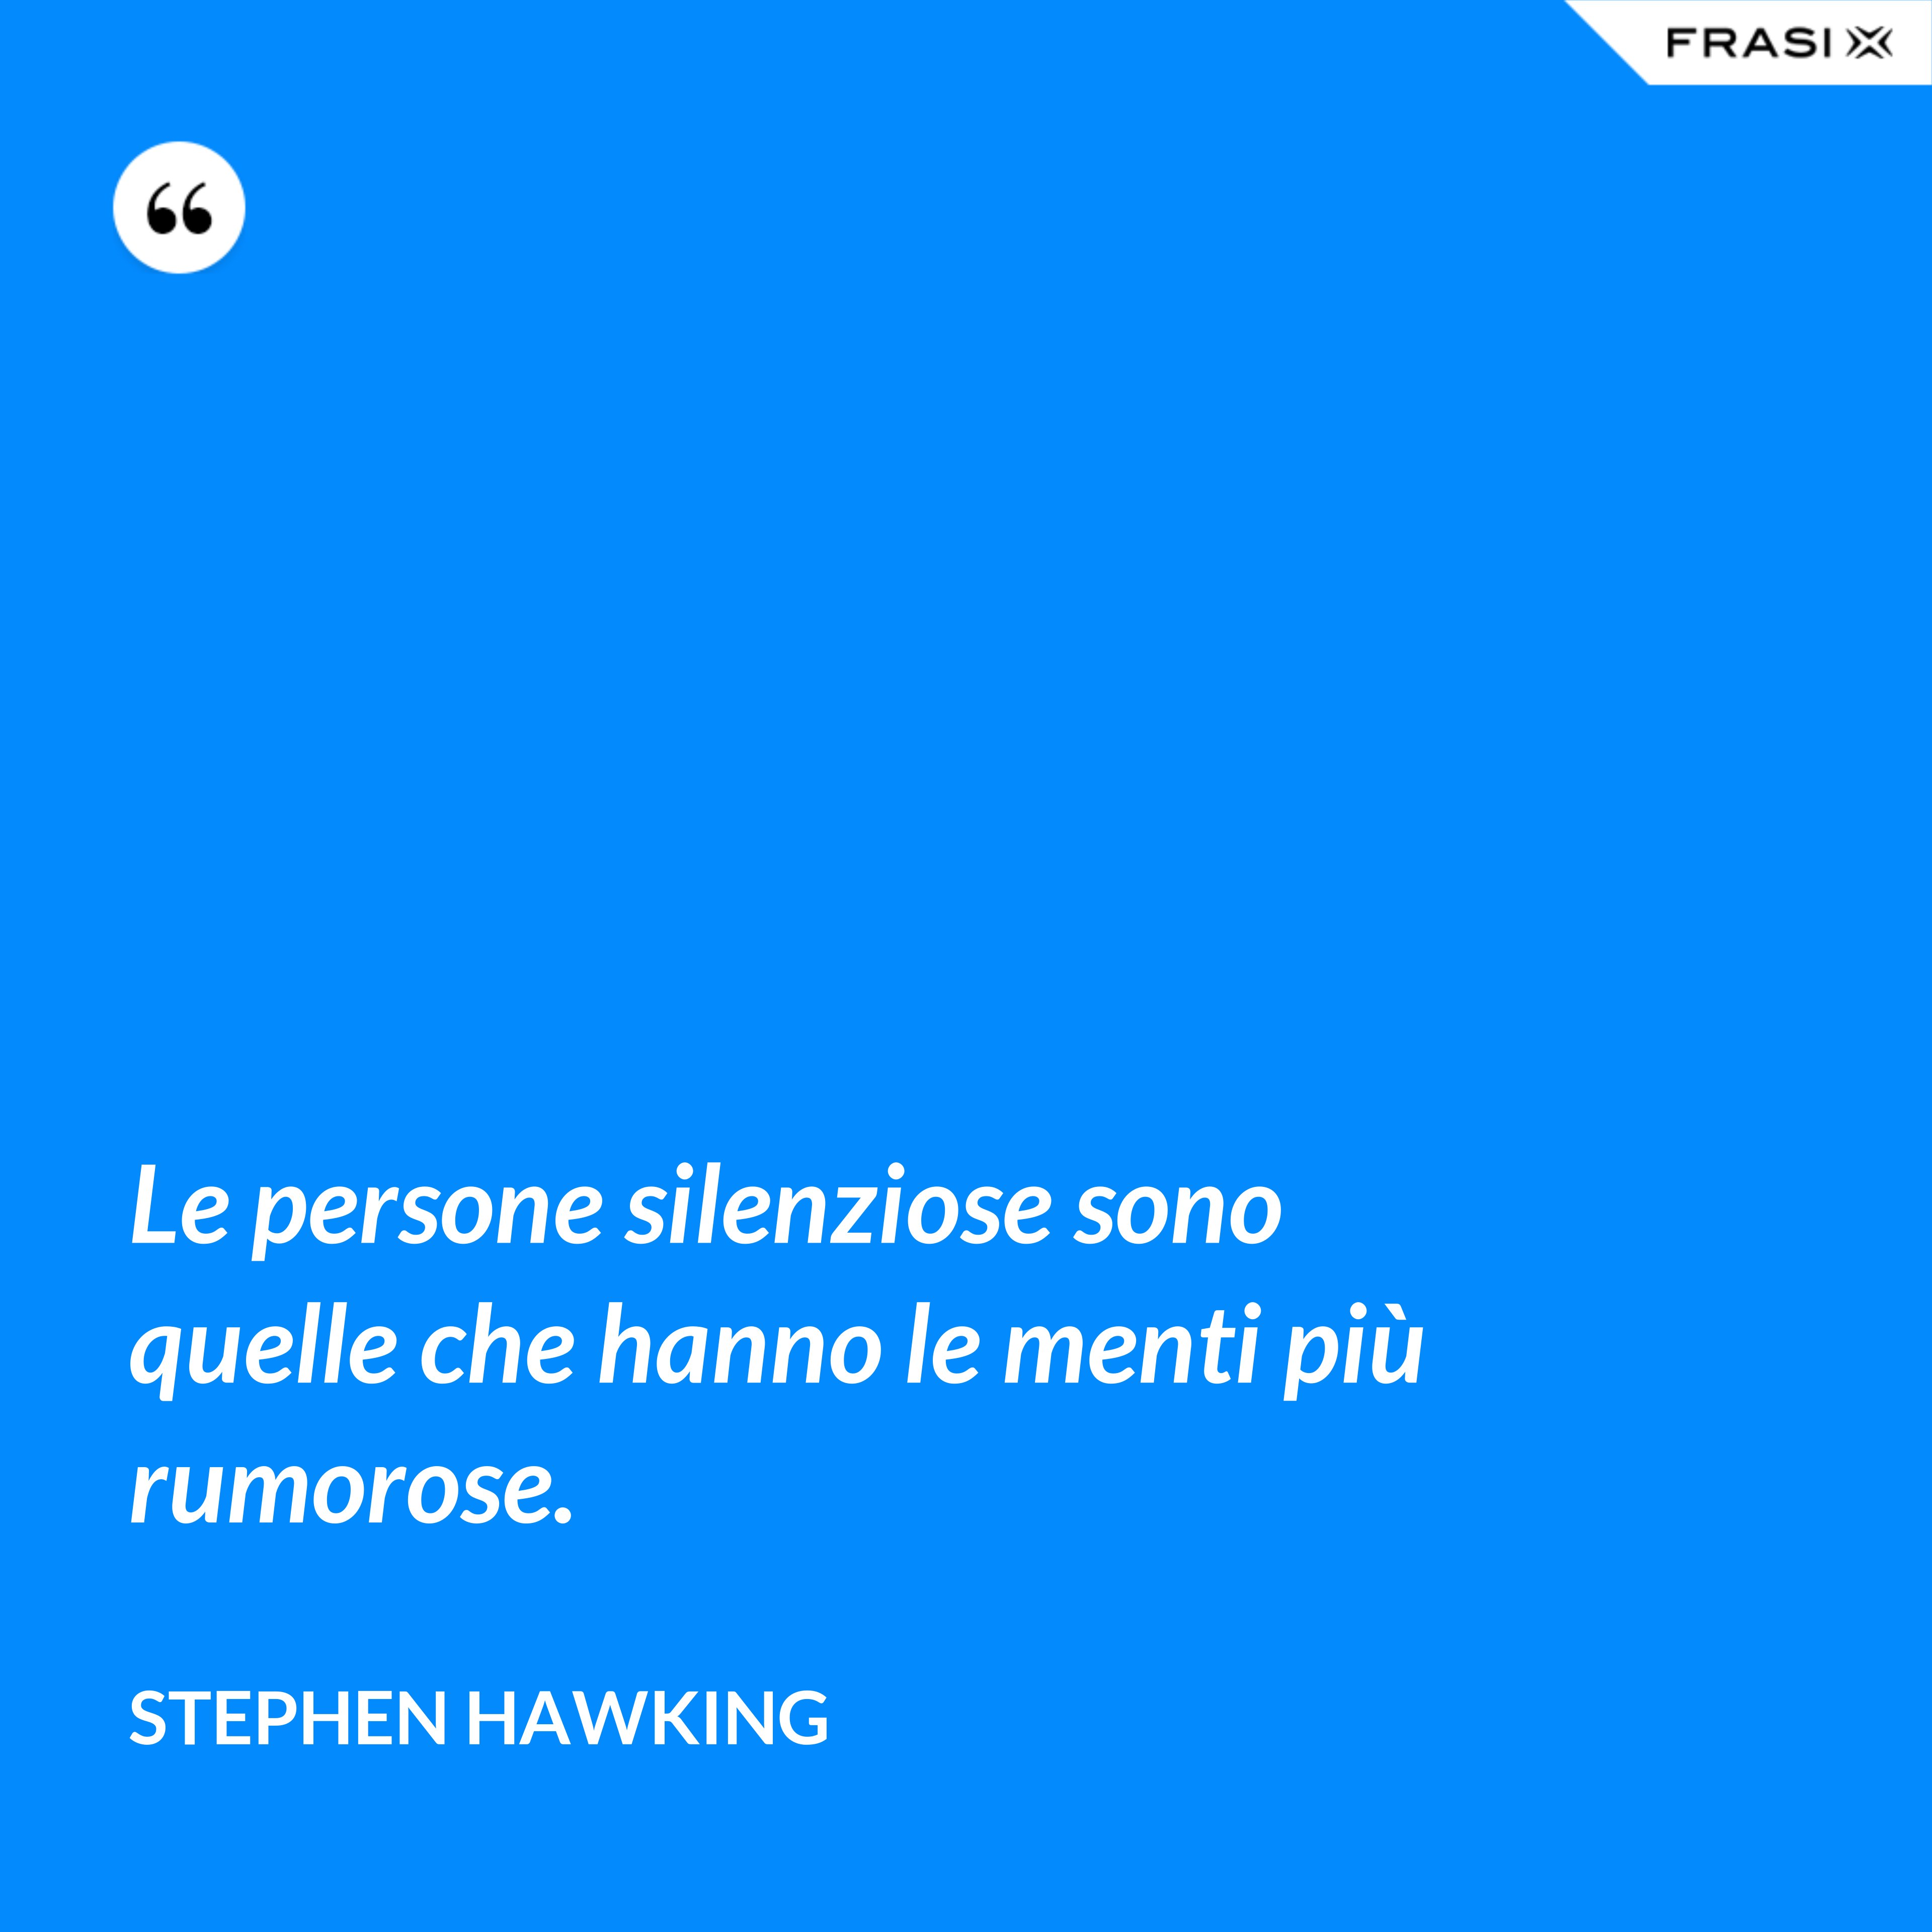 Le persone silenziose sono quelle che hanno le menti più rumorose. - Stephen Hawking